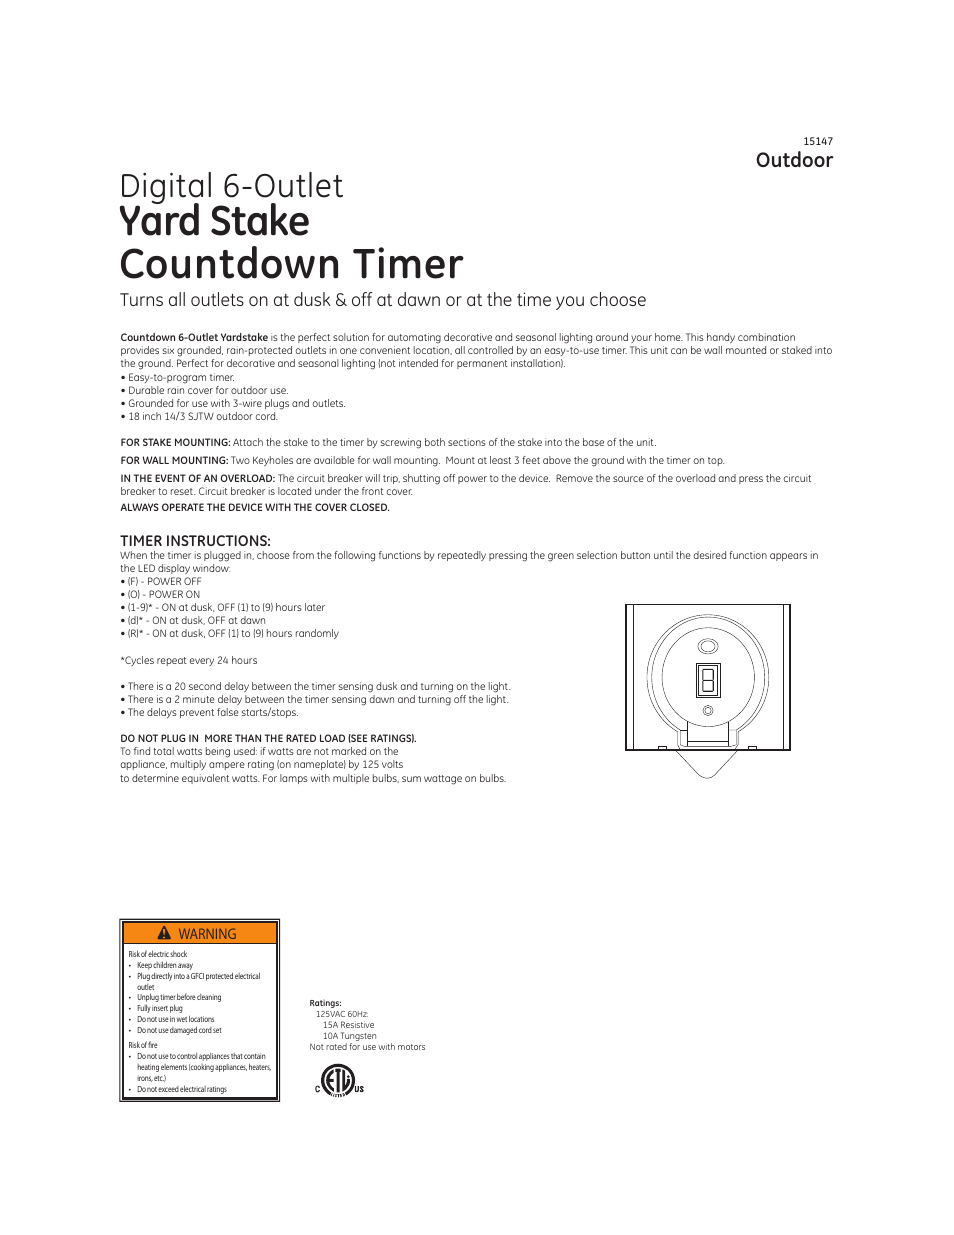 GE 15147 Digital Yard Stake Timer User Manual | 2 pages